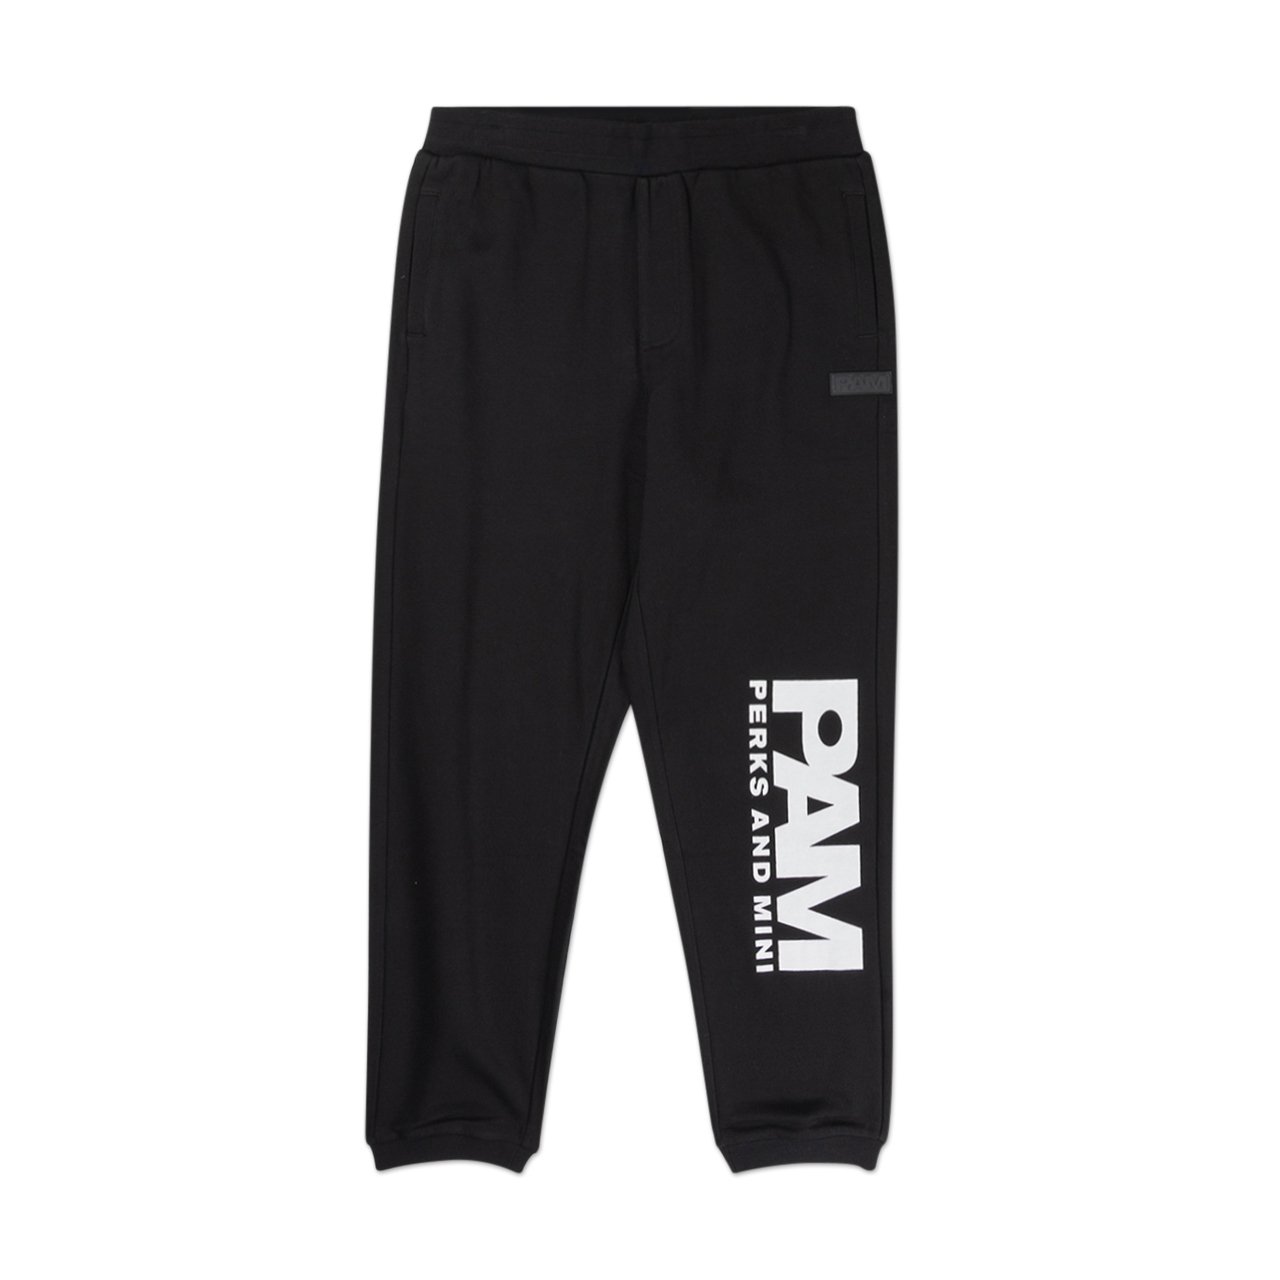 perks and mini b.t.c. jogger sweat pants (black) - 8382-b - a.plus - Image - 1